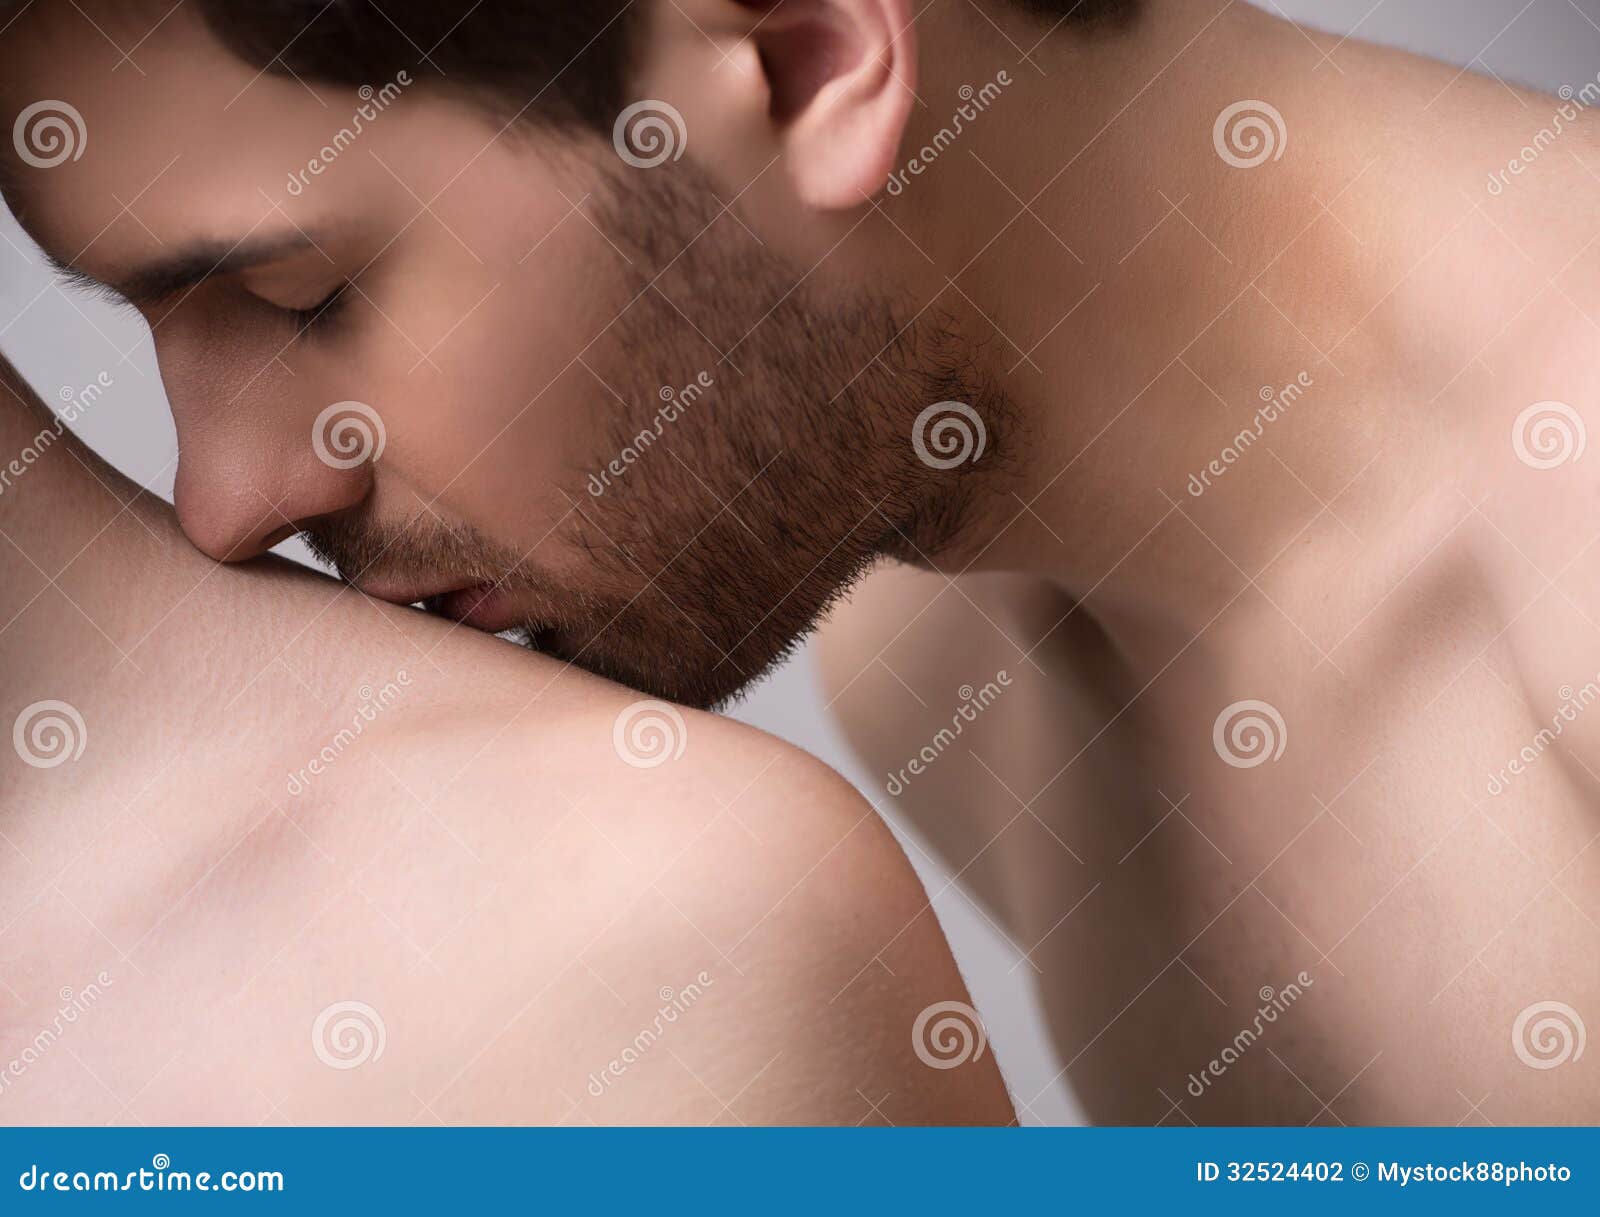 Мужчина целует женщину в лобок